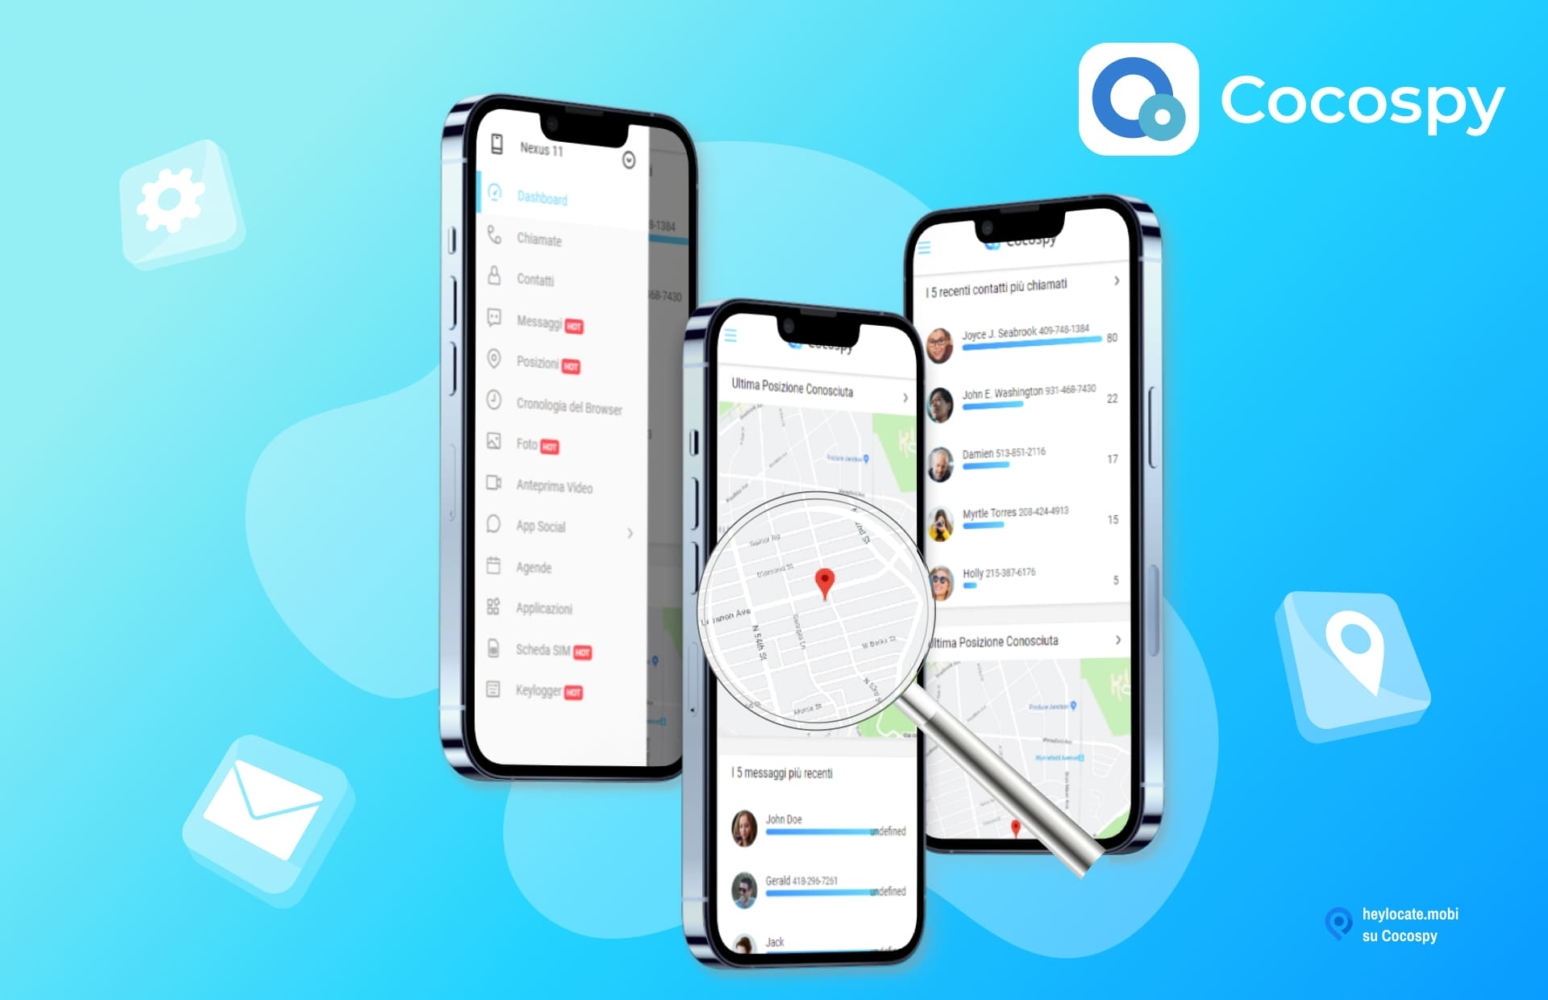 Immagine promozionale di Cocospy che mostra l'interfaccia dell'app su smartphone. L'interfaccia include opzioni come chiamate, messaggi, posizioni e una mappa che mostra la posizione.